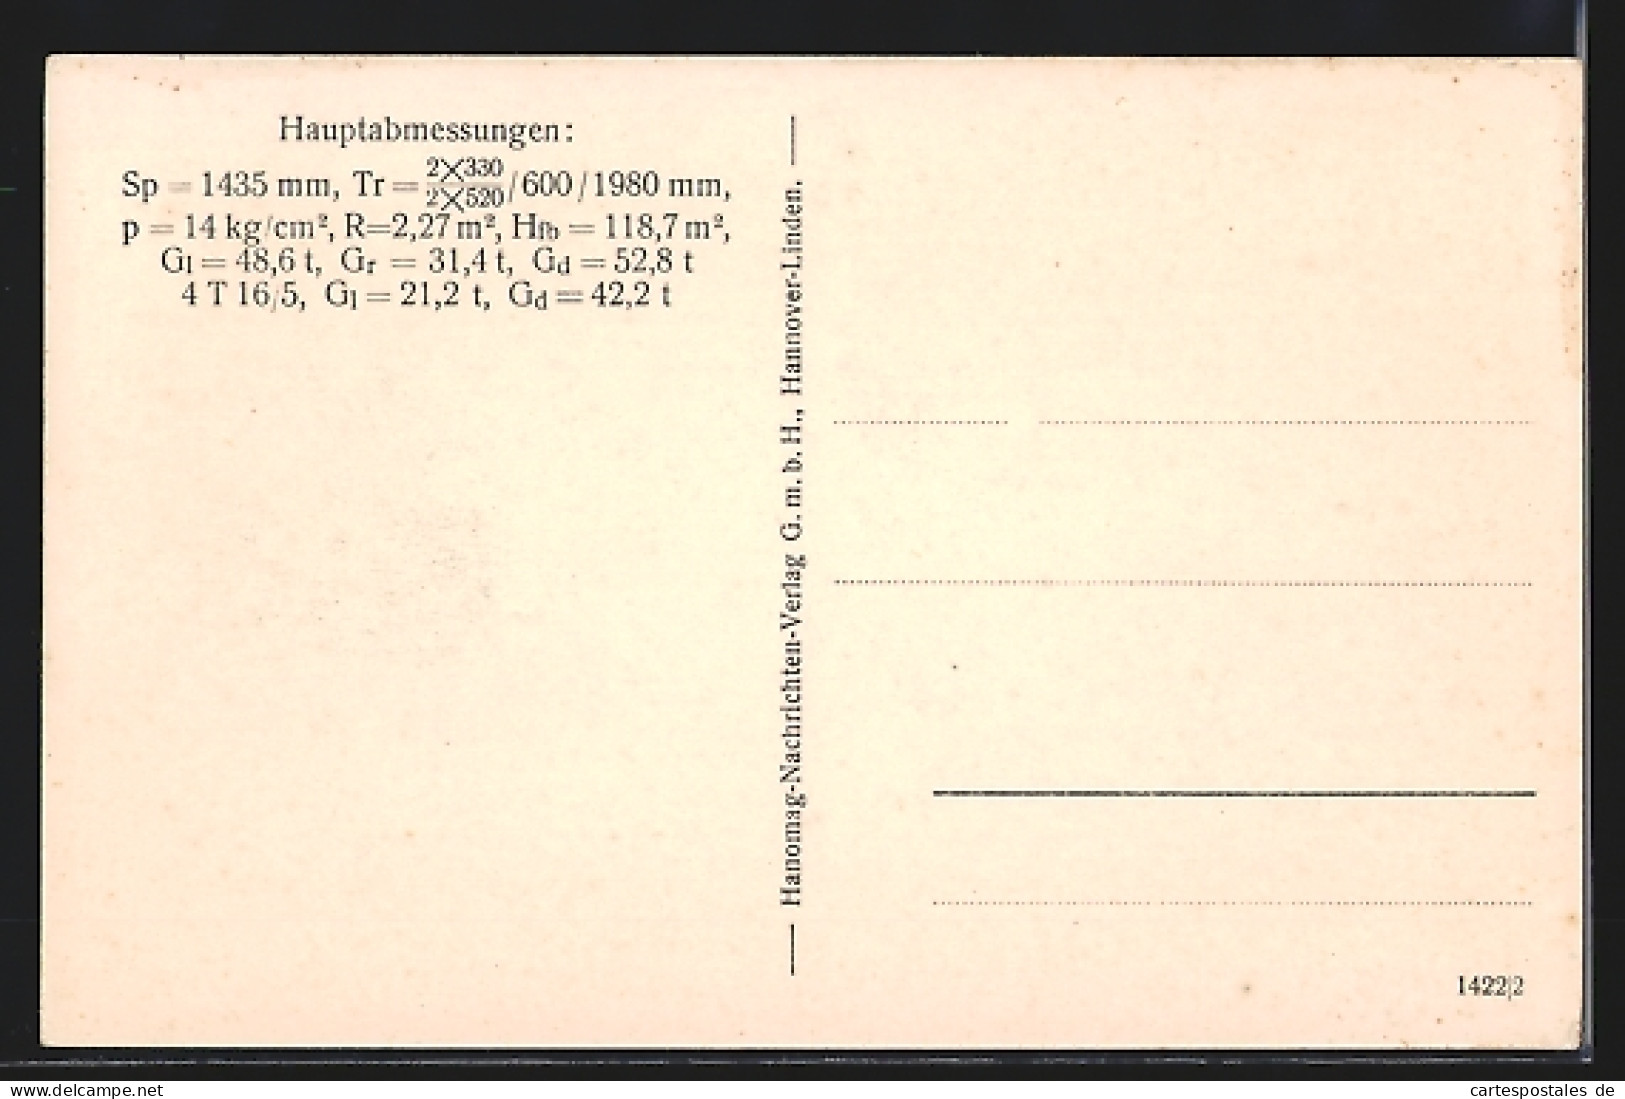 AK Hanomag, Hannover-Linden, 2 B-Vierzylinder Verbund Nassdampf-Schnellzuglokomotive, Gattung S 5  - Trains